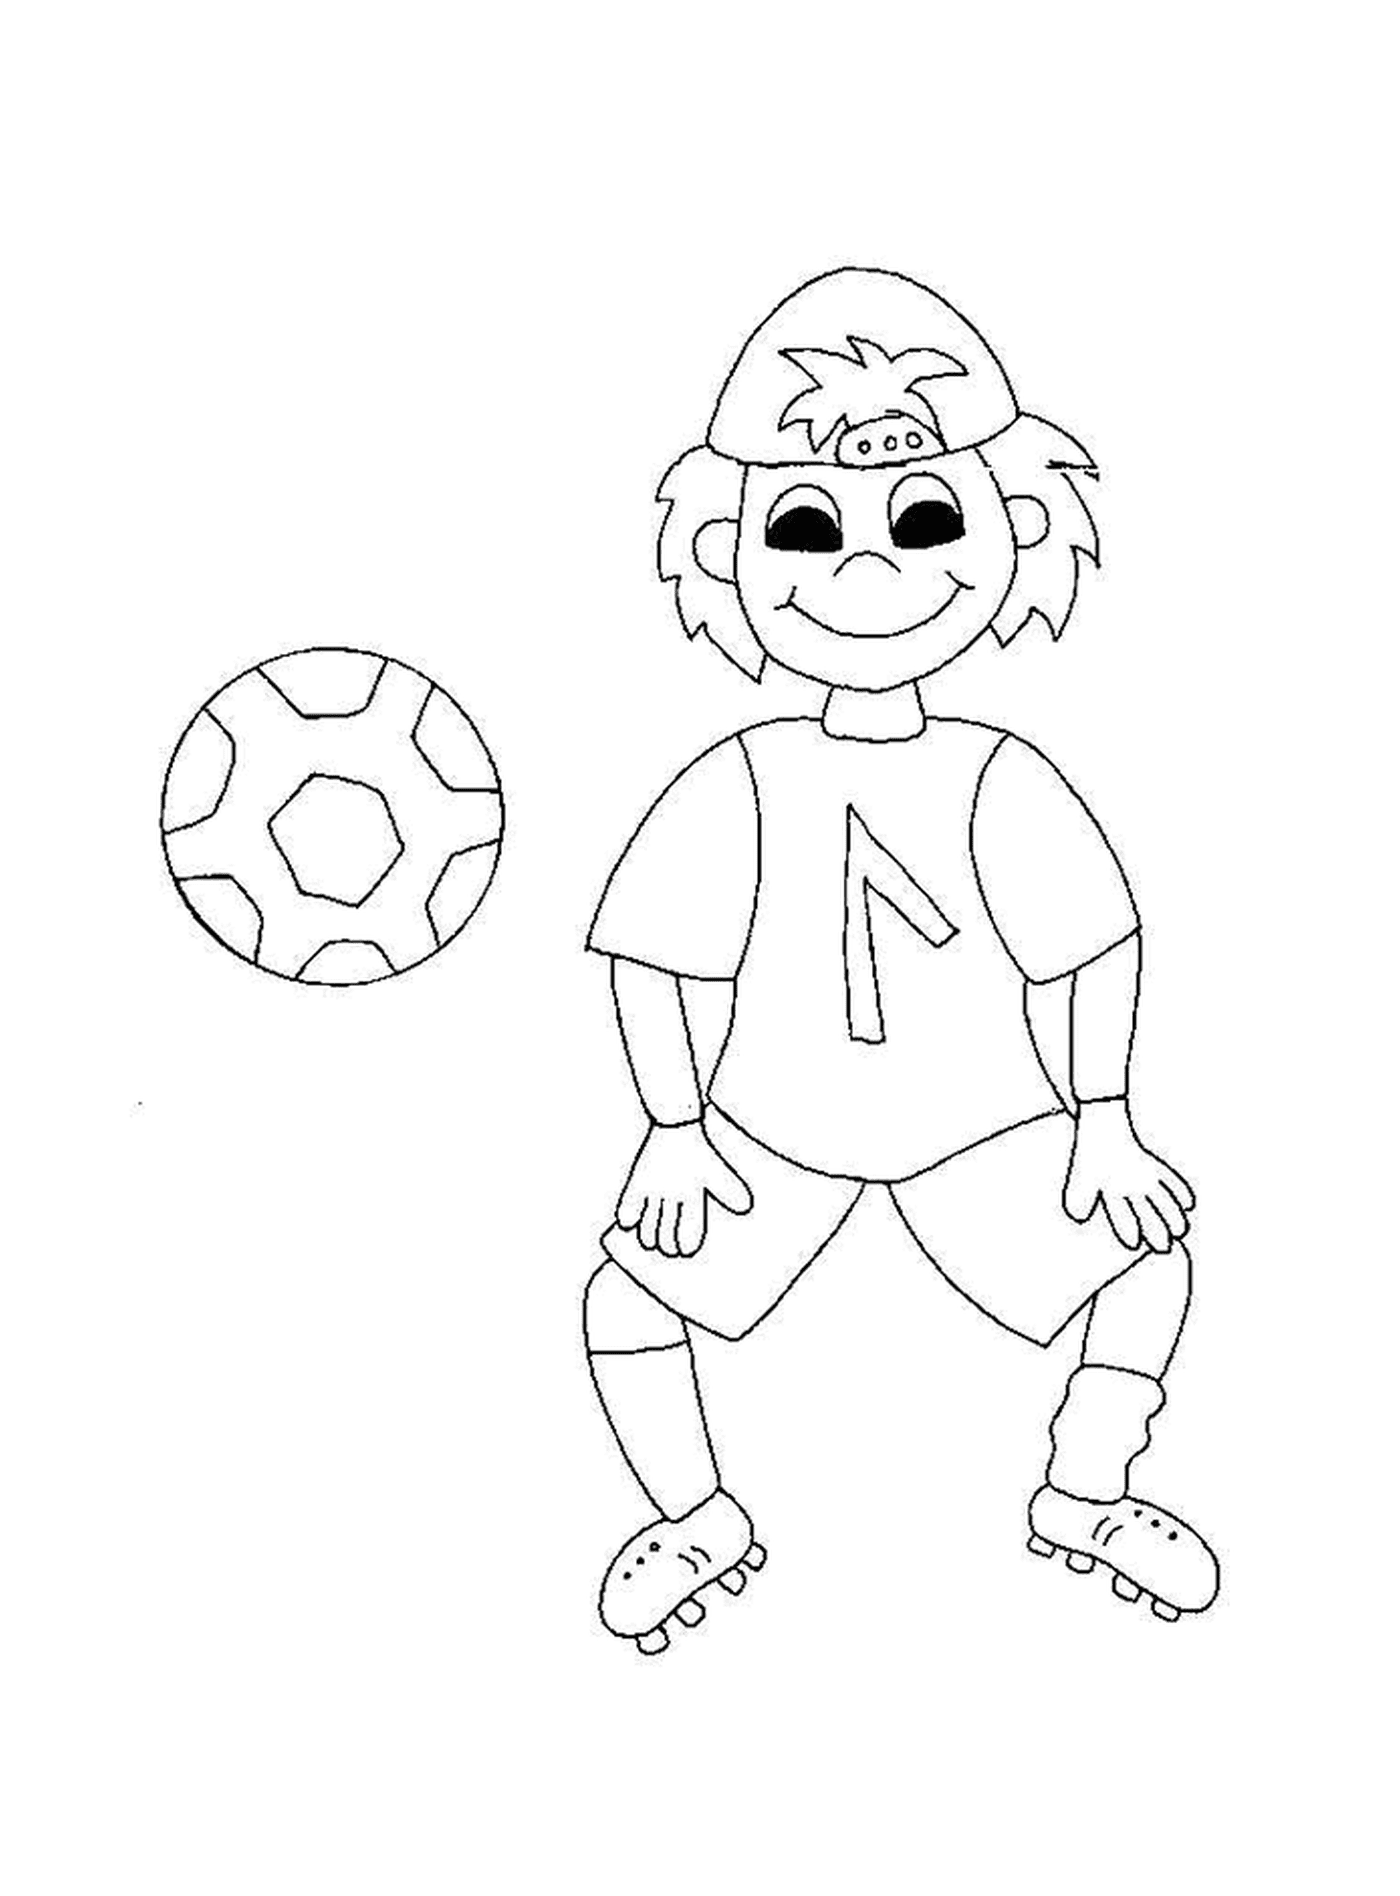  一个微笑的孩子踢足球 